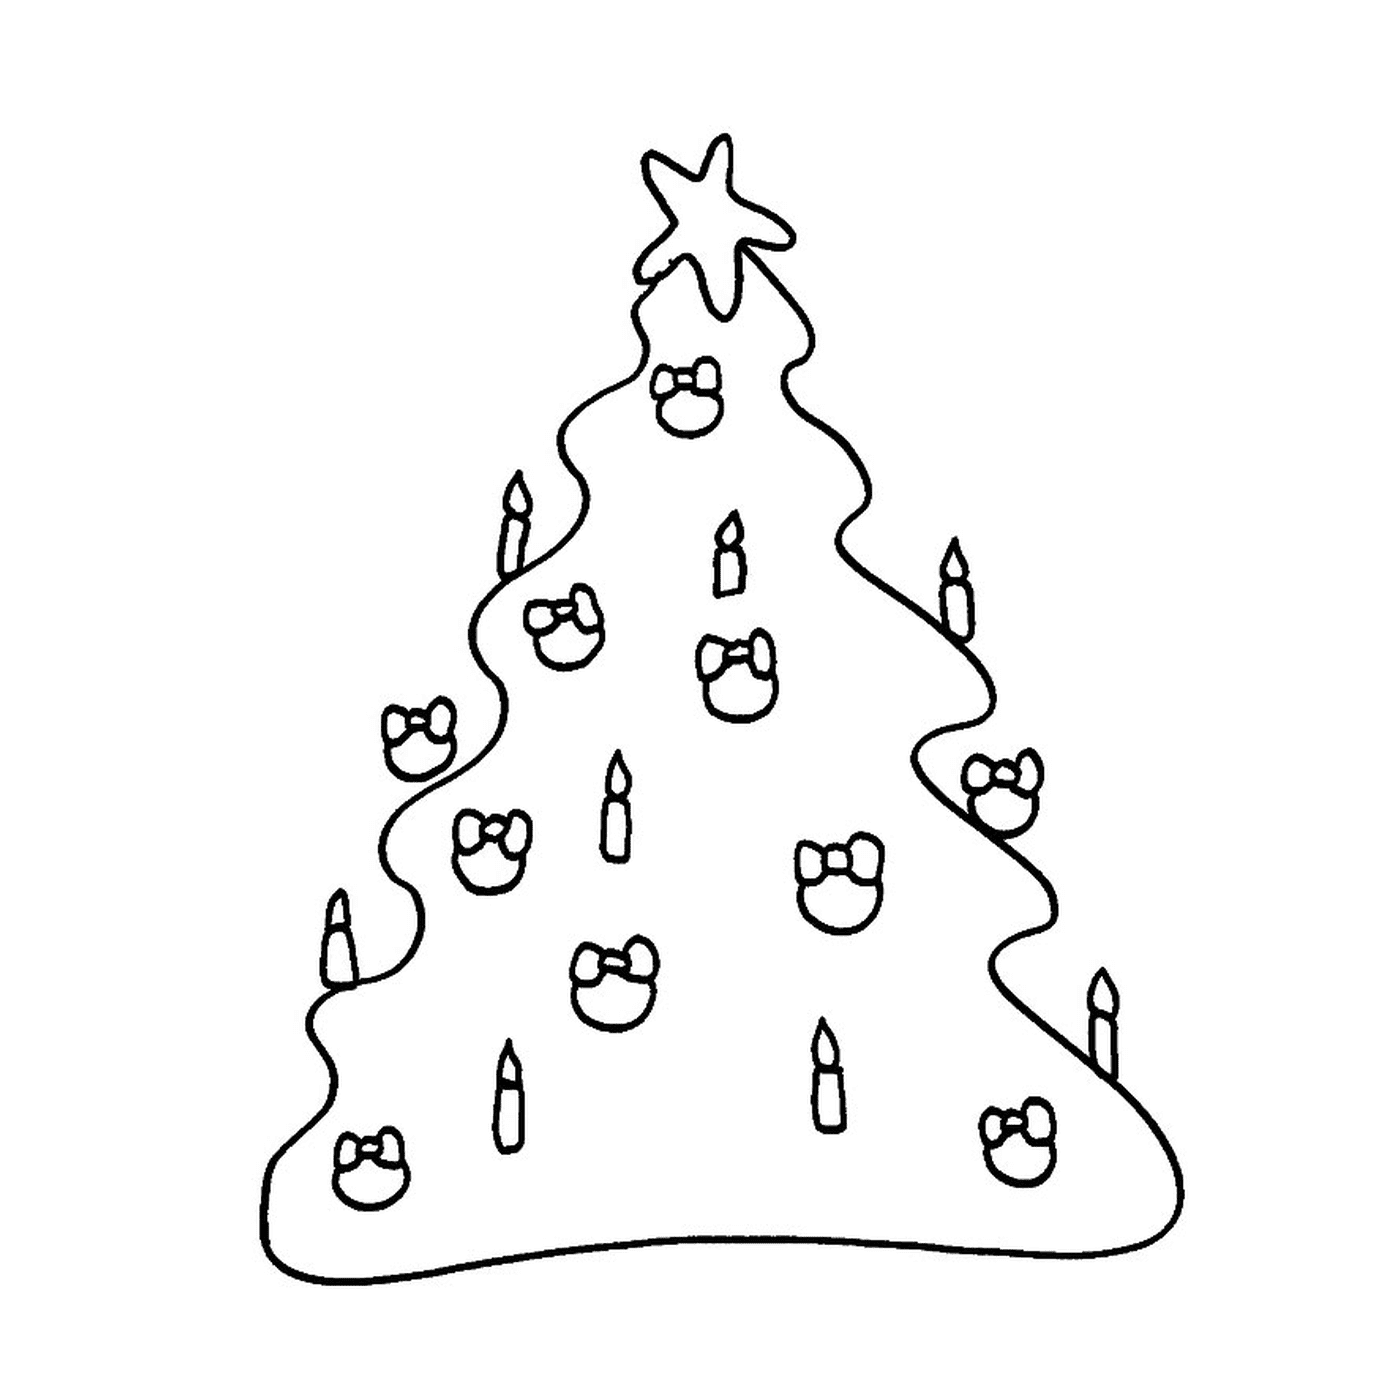  मोमबतियों के साथ क्रिसमस का पेड़ 